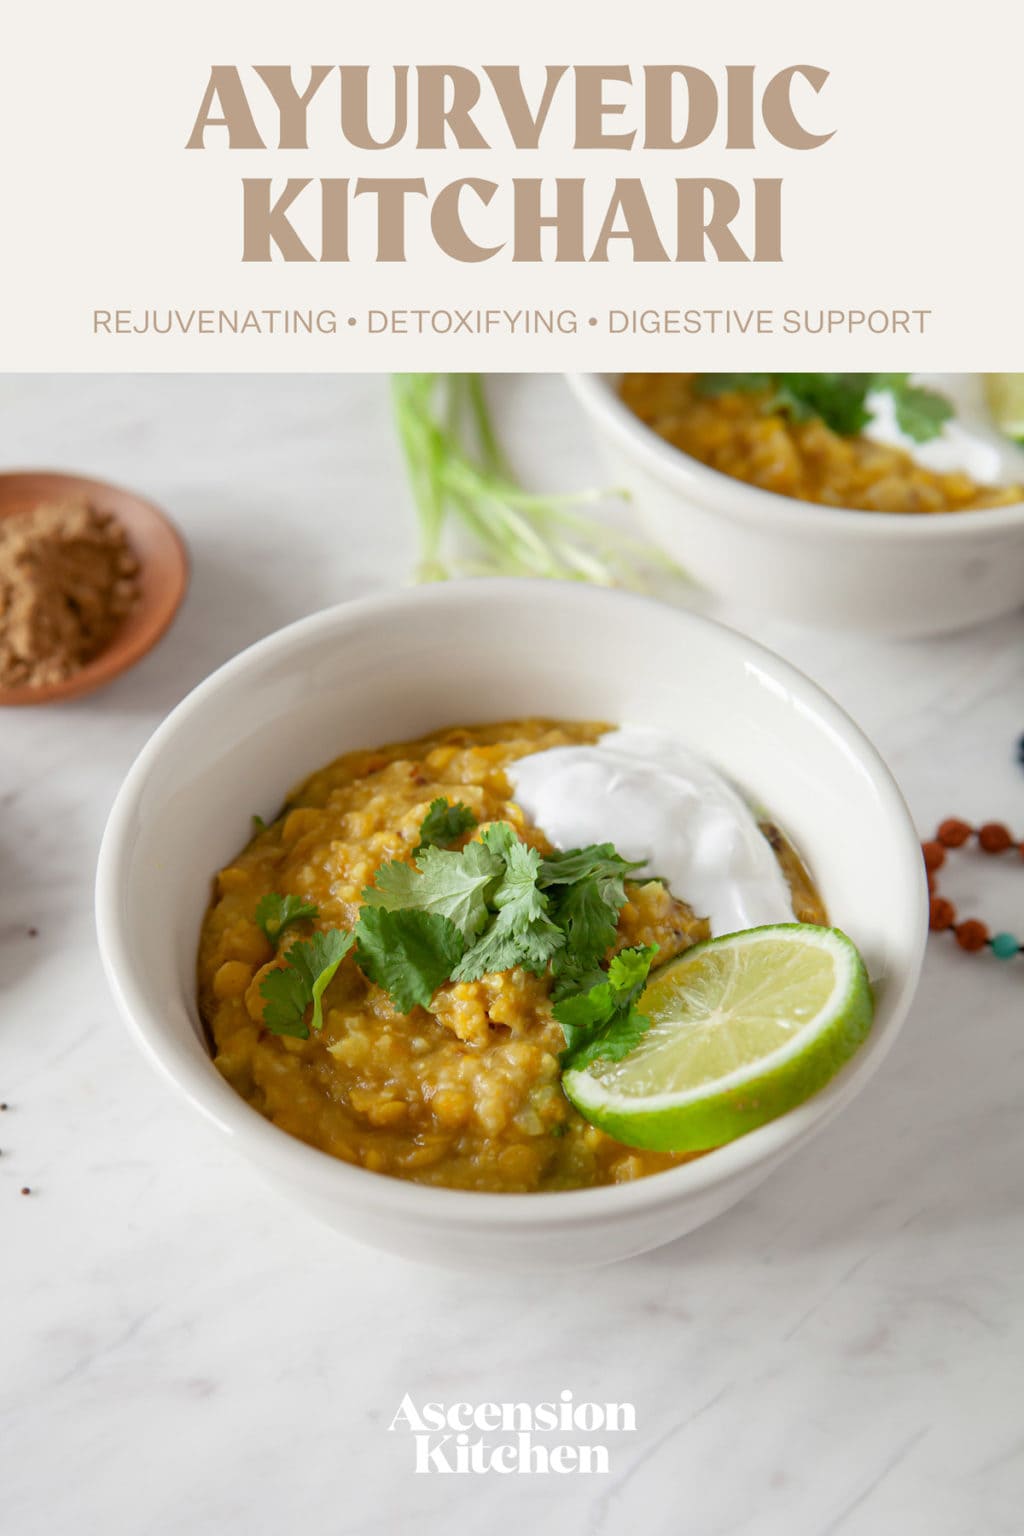 How to make kitchari – an Ayurvedic healing meal • Ascension Kitchen